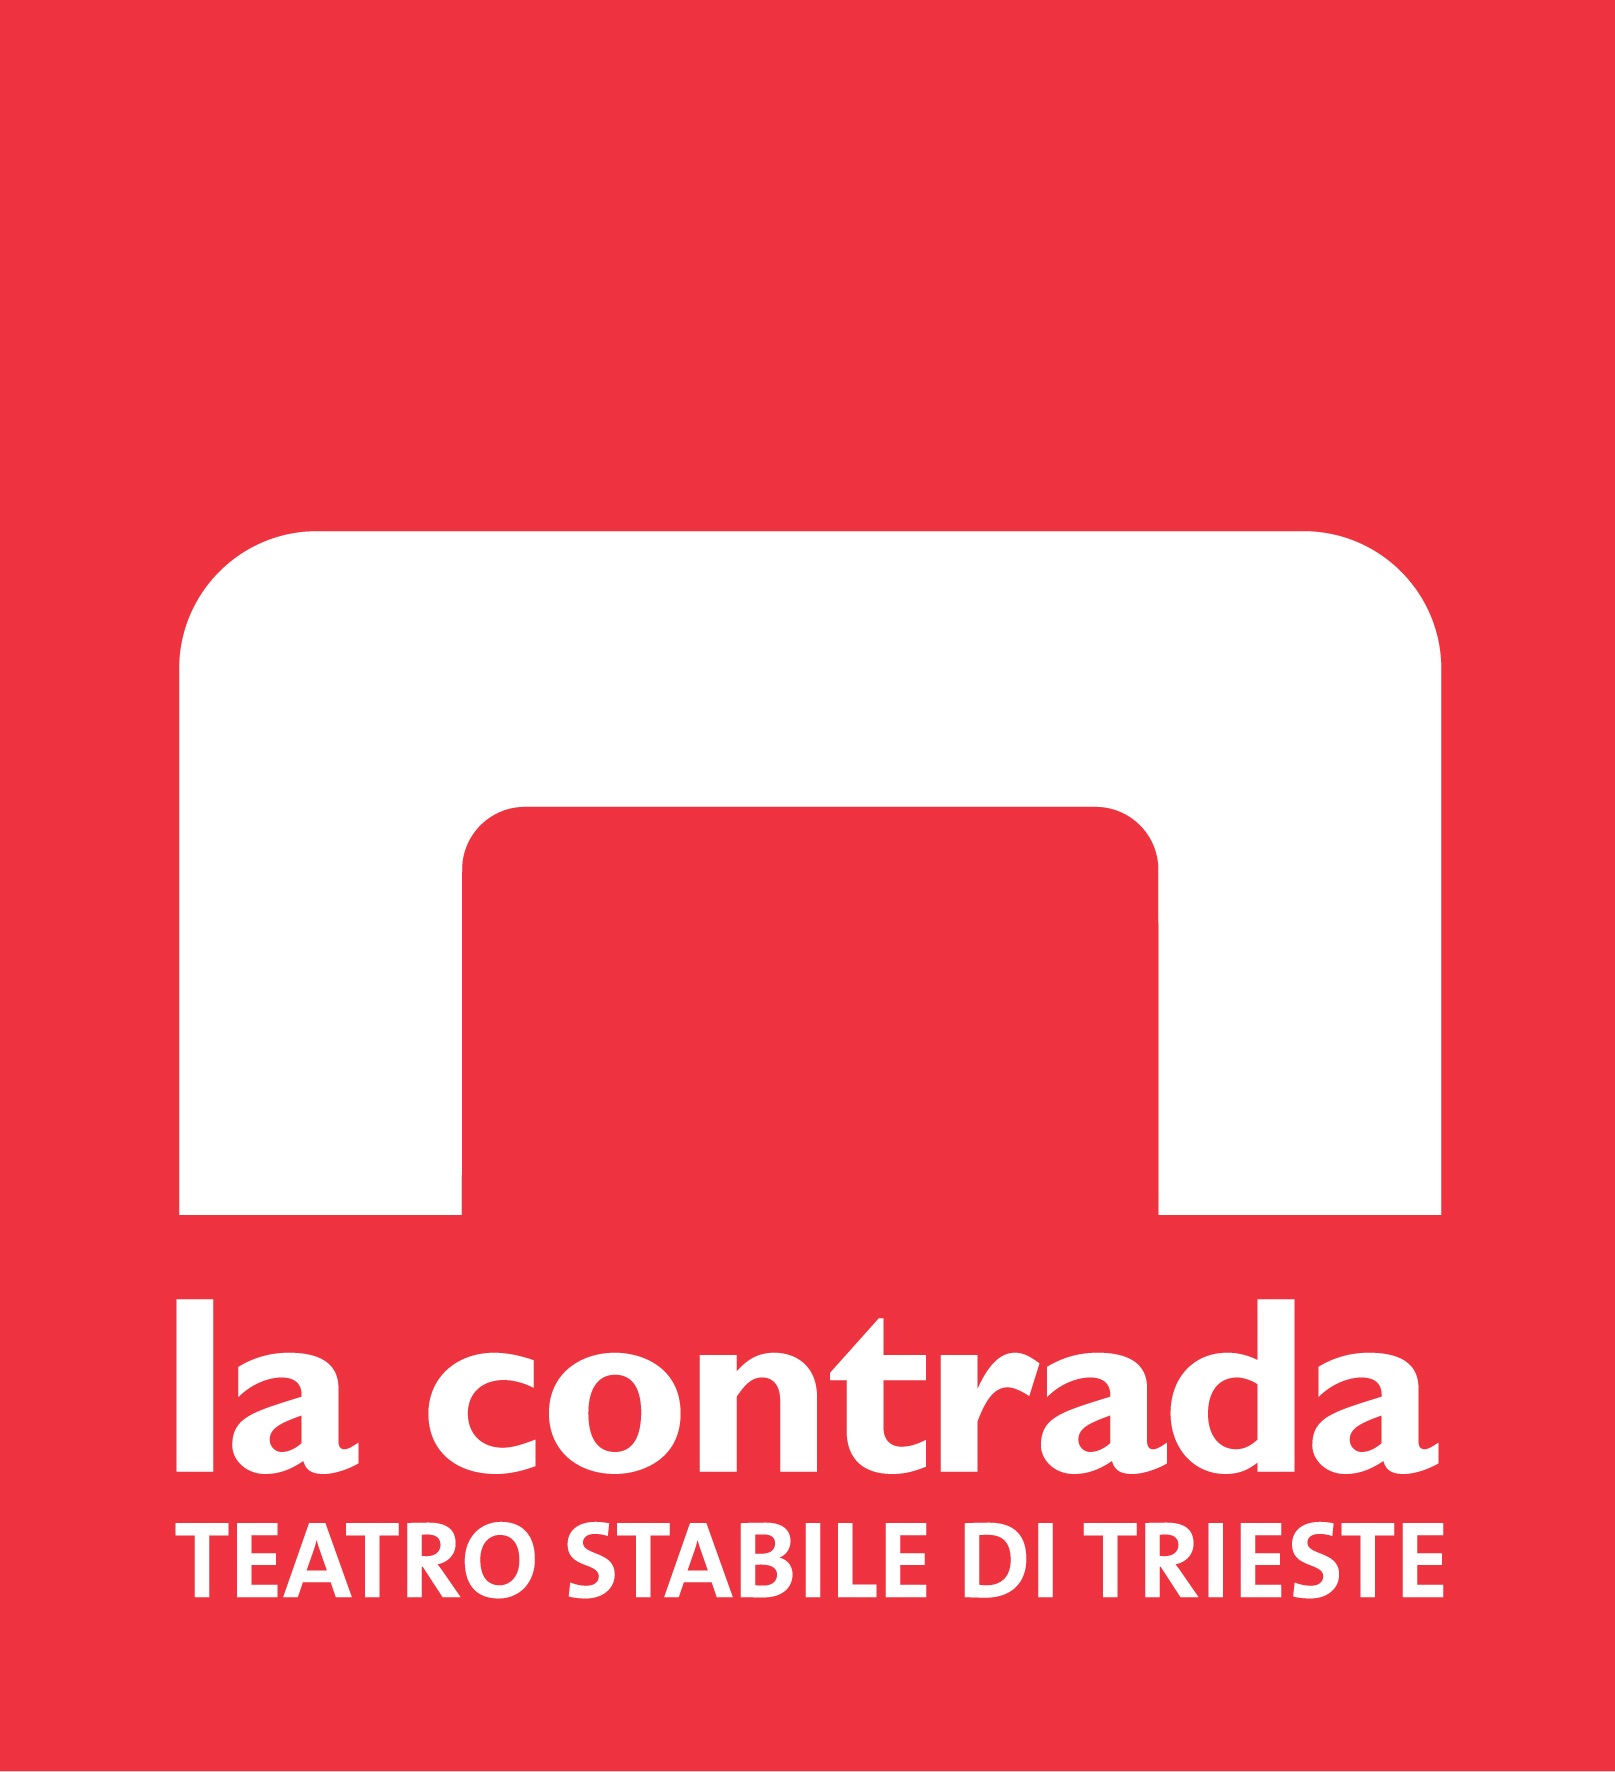 La Contrada Teatro Stabile di Trieste